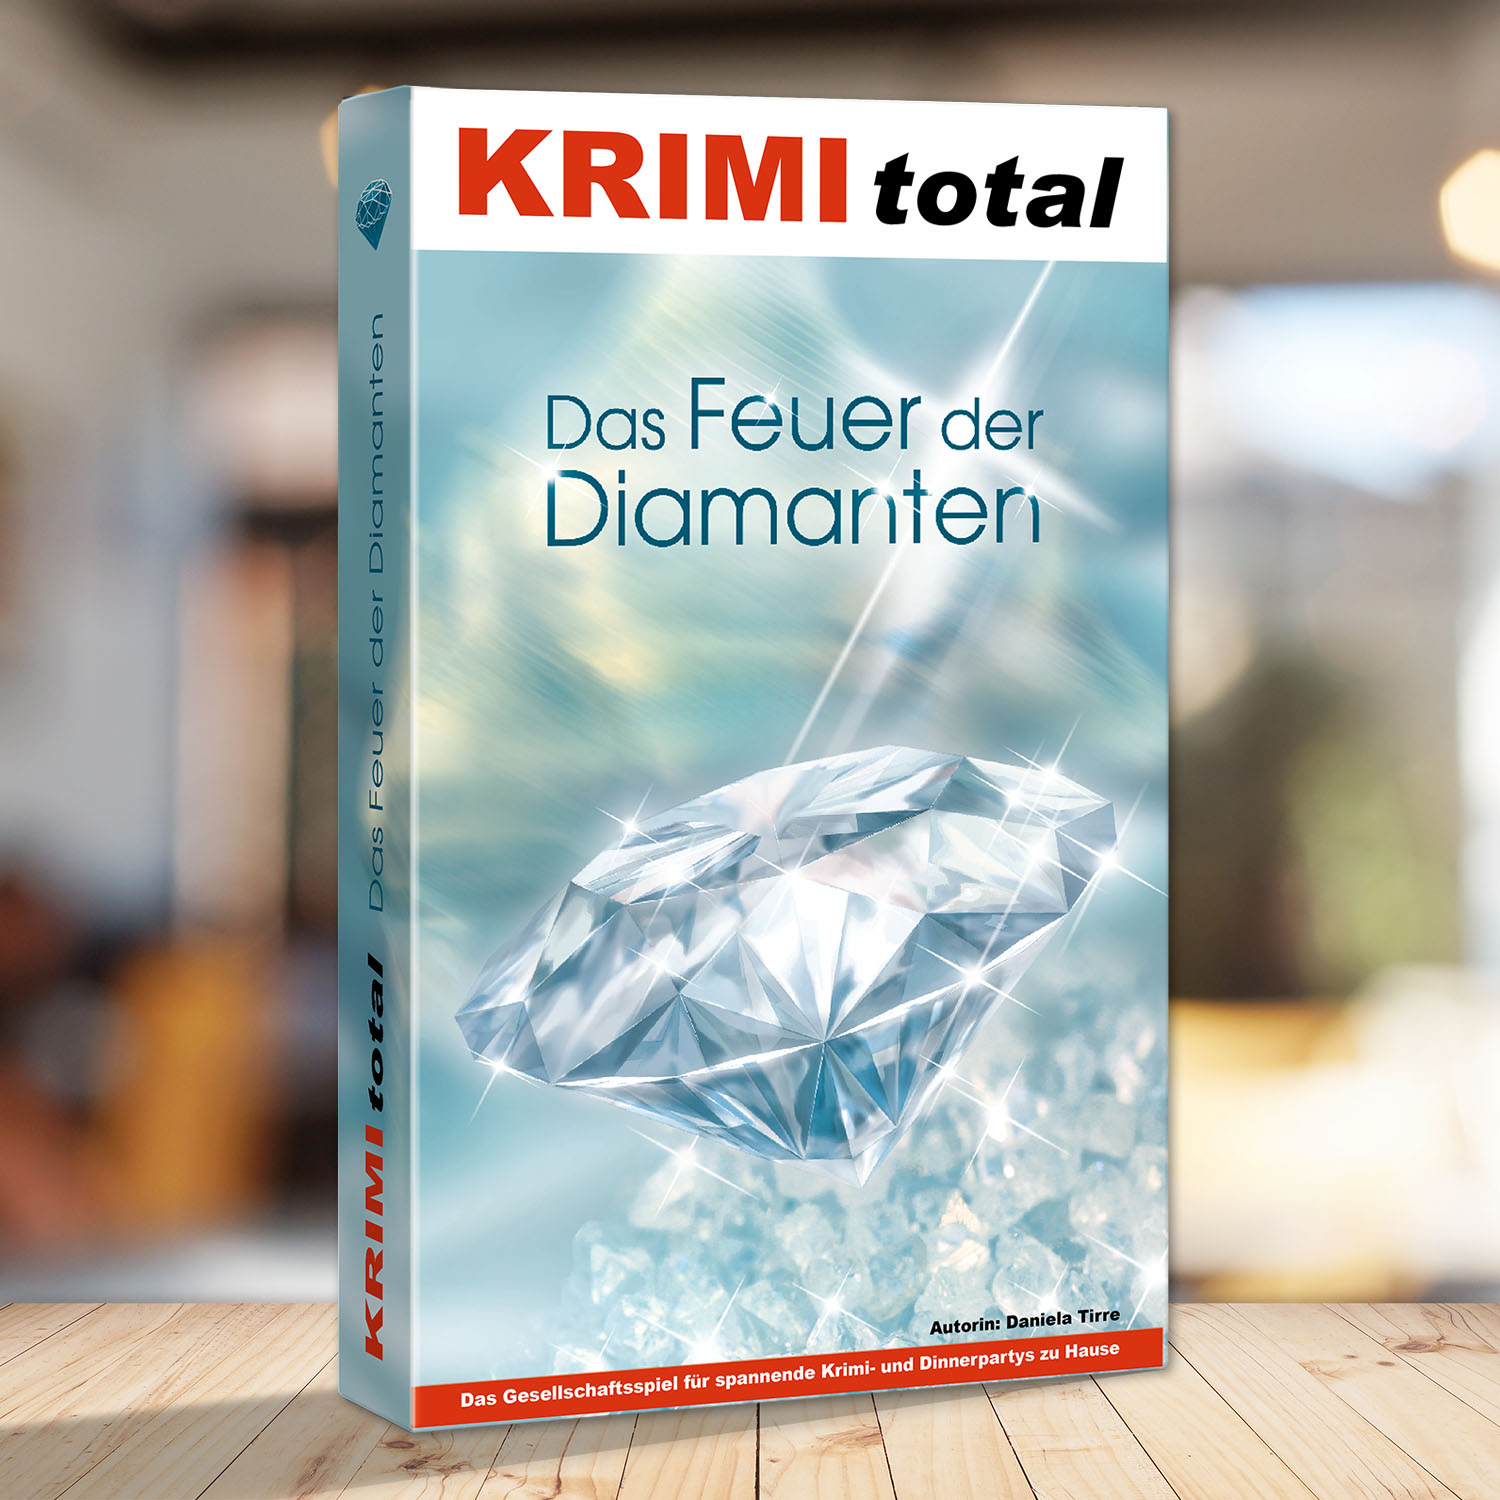 Abbildung eines Spielkartons des Krimidinner Spiels "KRIMI total - Das Feuer der Diamanten"